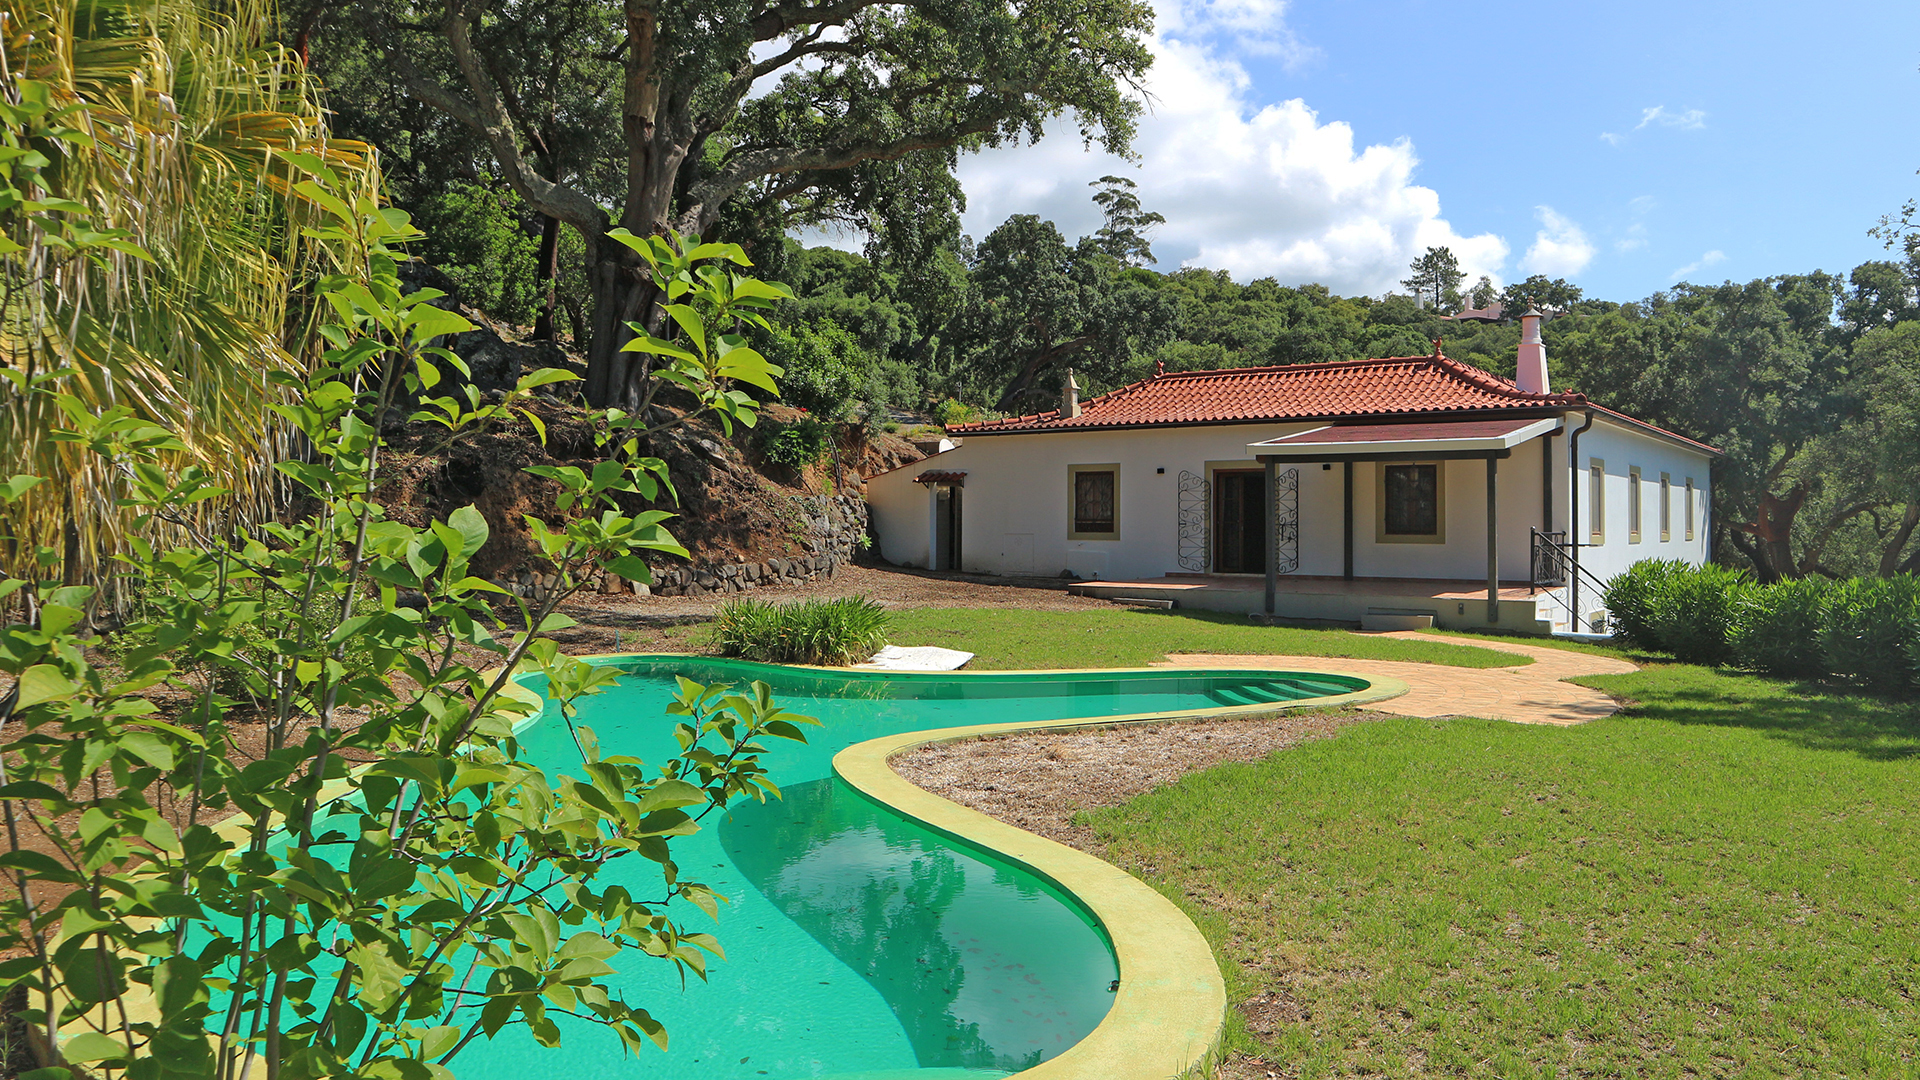 Togofor Homes Agence immobilière travaillant avec des clients nationaux et internationaux depuis 2005